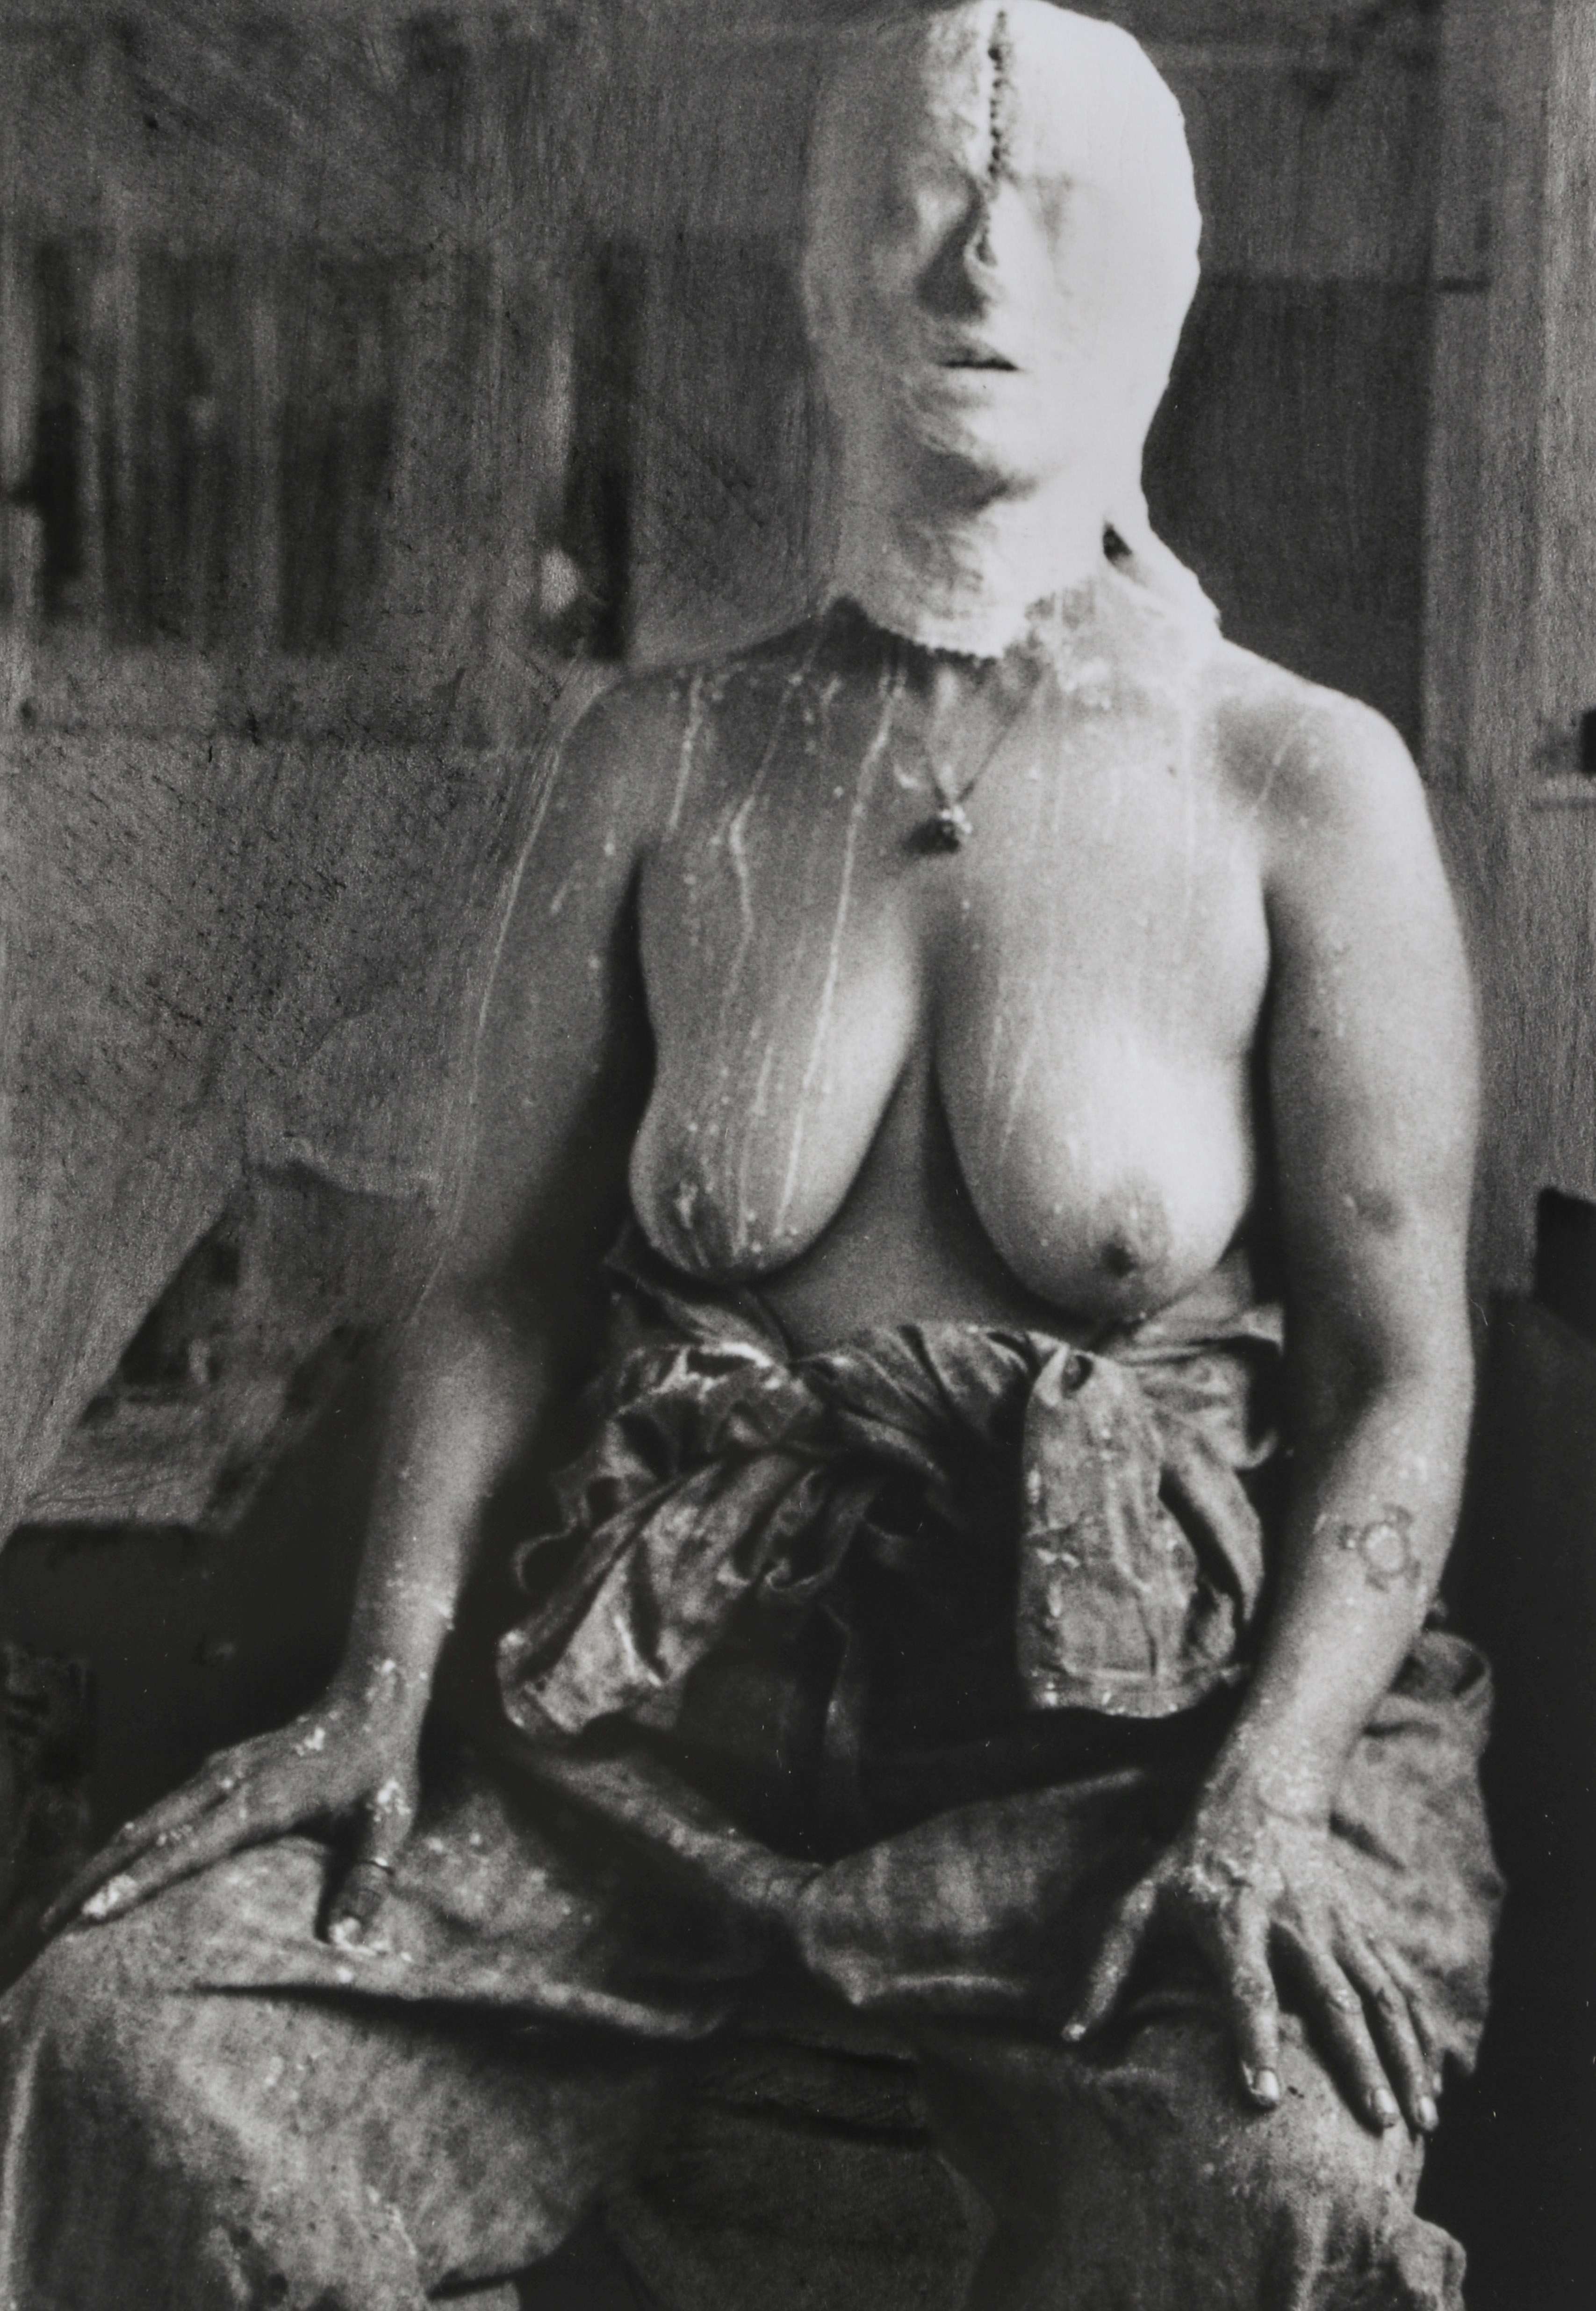 KIKI SMITH (BORN 1954) SILVER GELATIN PHOTOGRAPH